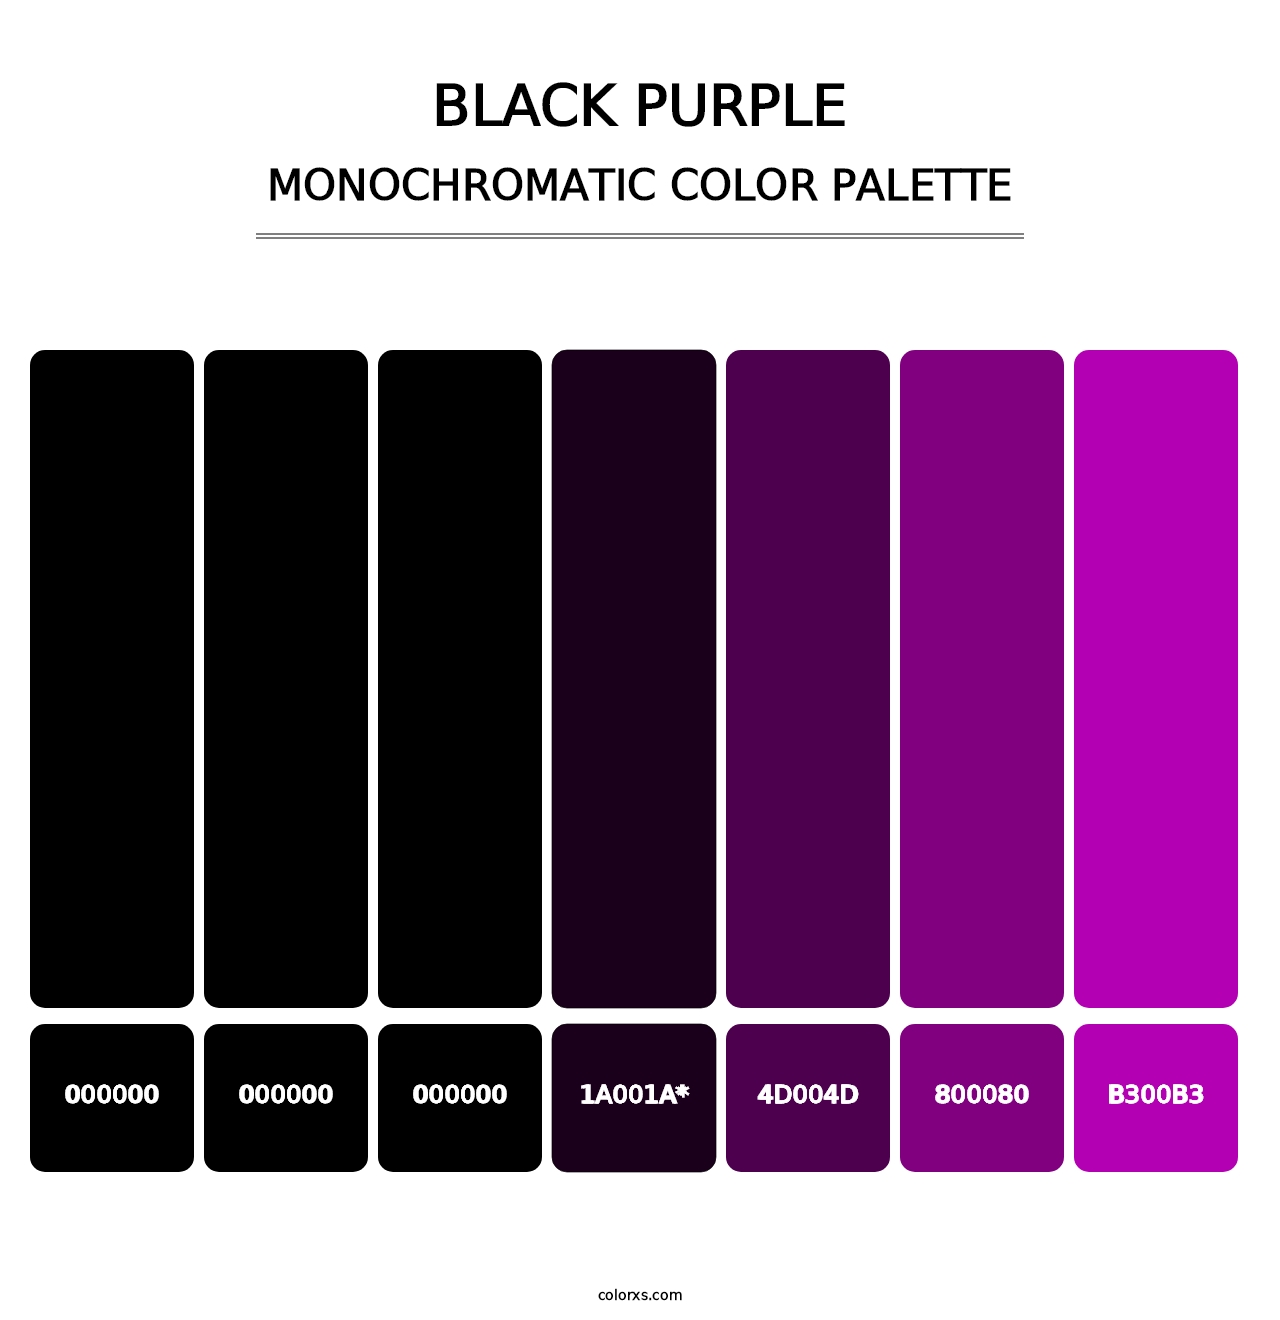 Black Purple - Monochromatic Color Palette